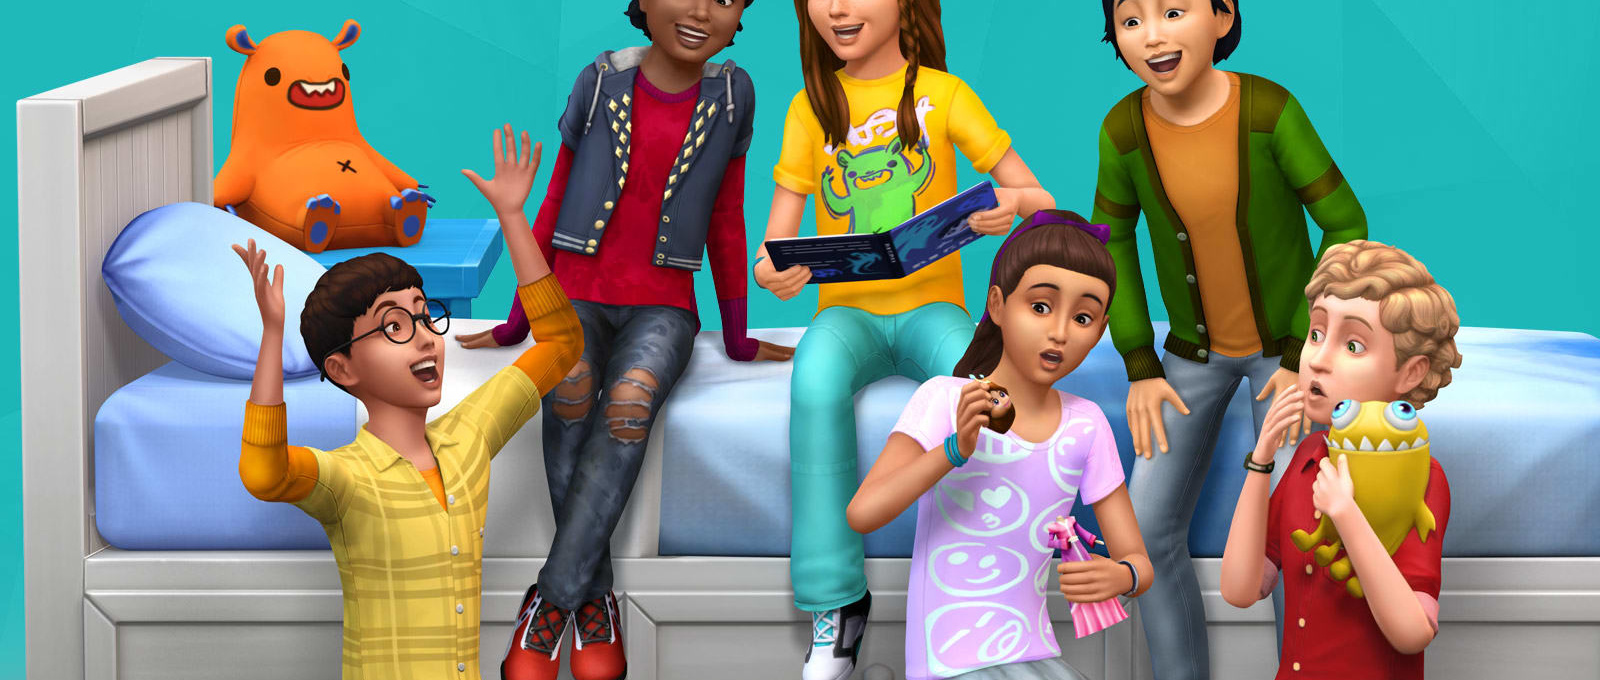 30 Sims 4 Children Clothes CCs